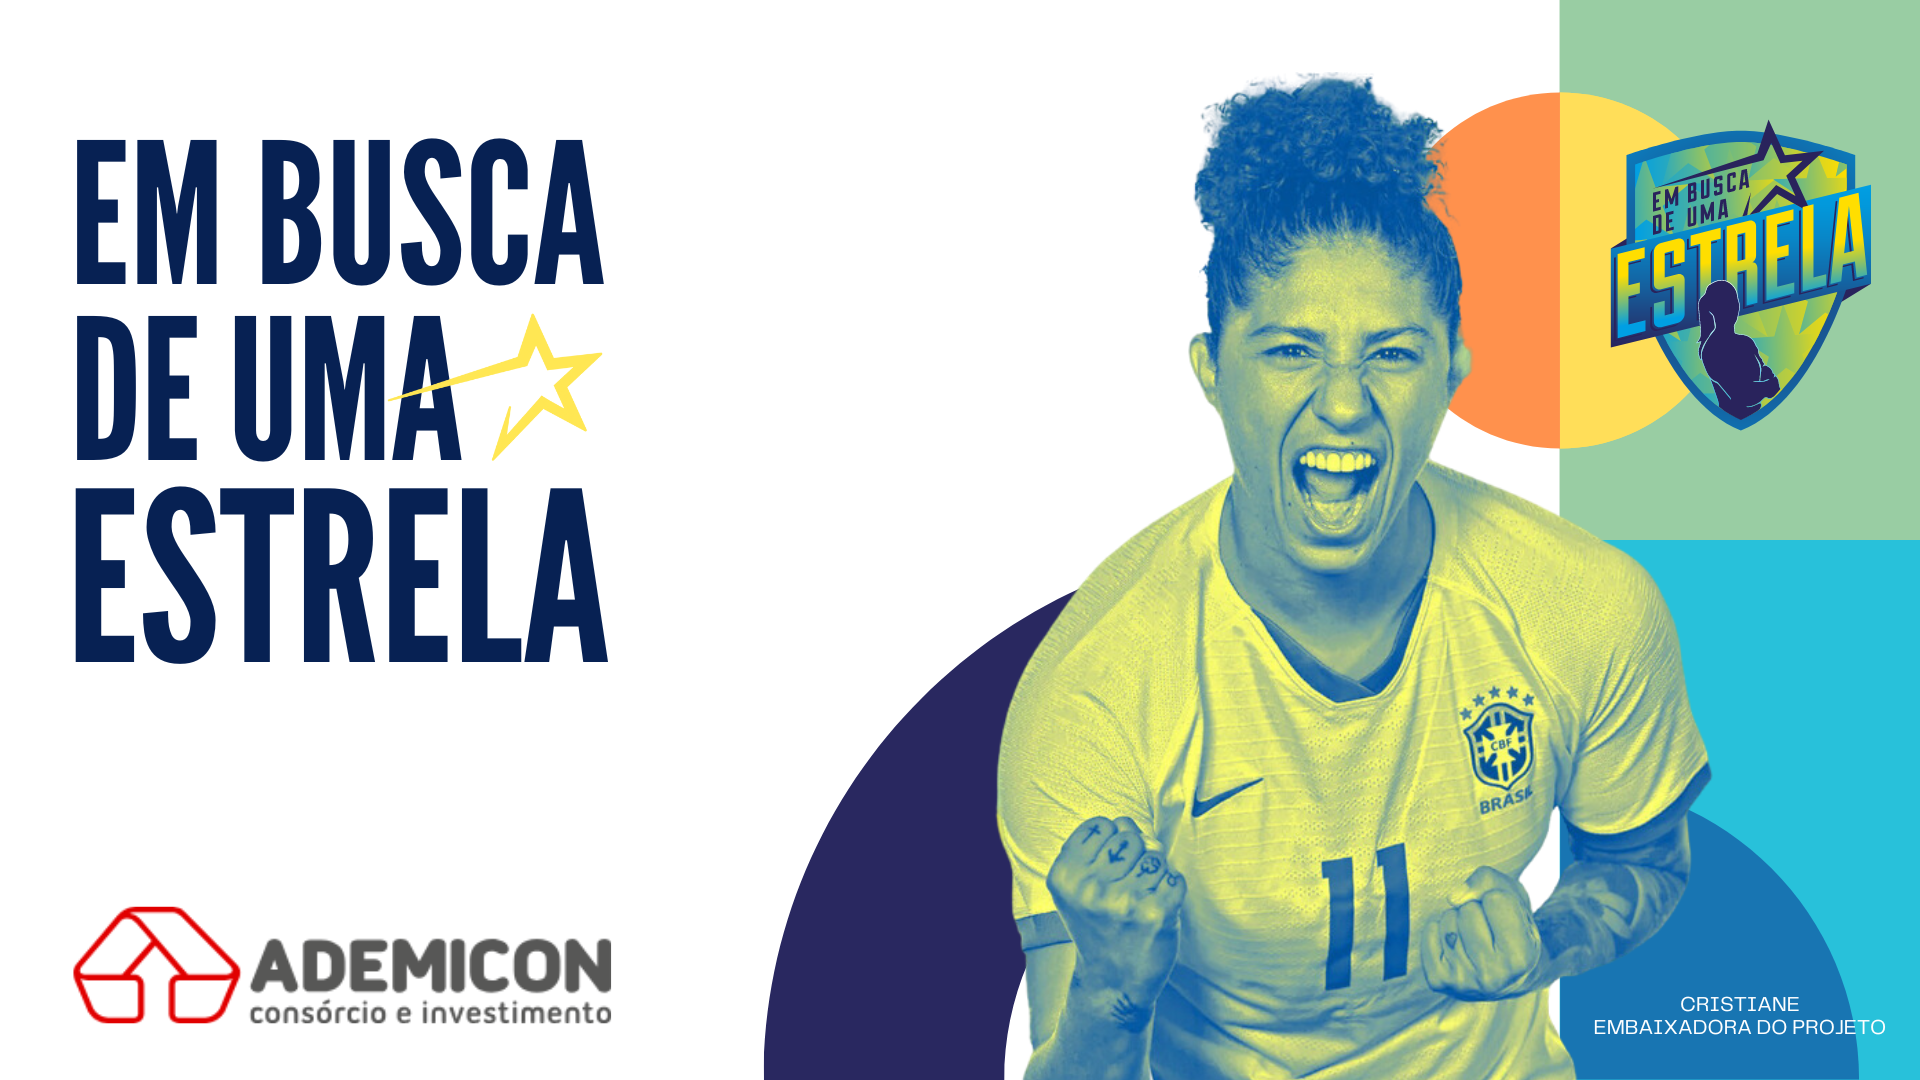 Ademicon reforça apoio ao futebol feminino com patrocínio à ‘Em Busca de Uma Estrela’